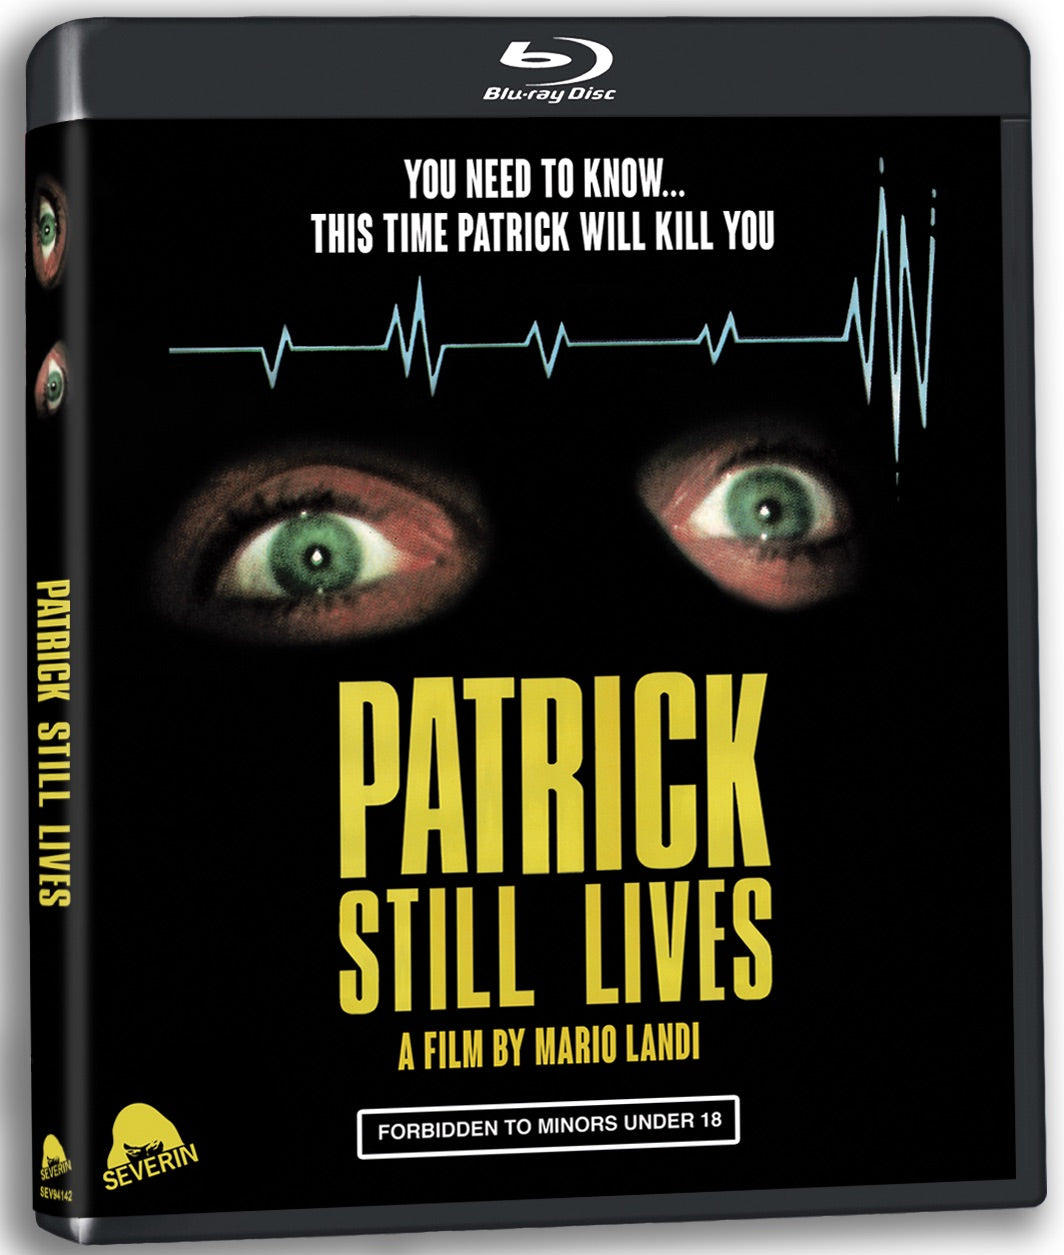 Patrick Still Lives [Standard Blu-ray]